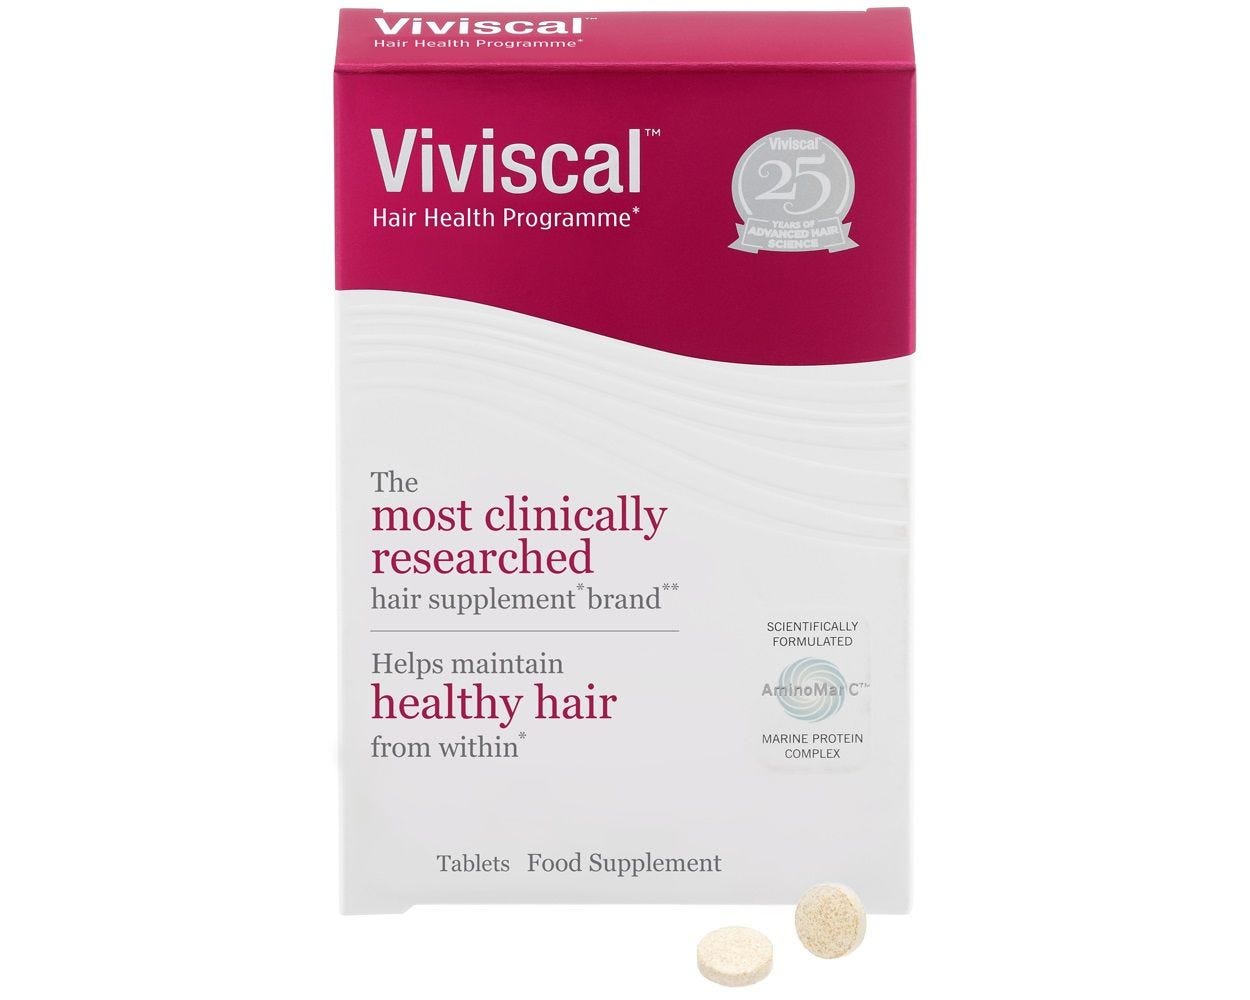 Suplementos Viviscal para el crecimiento del cabello sano.